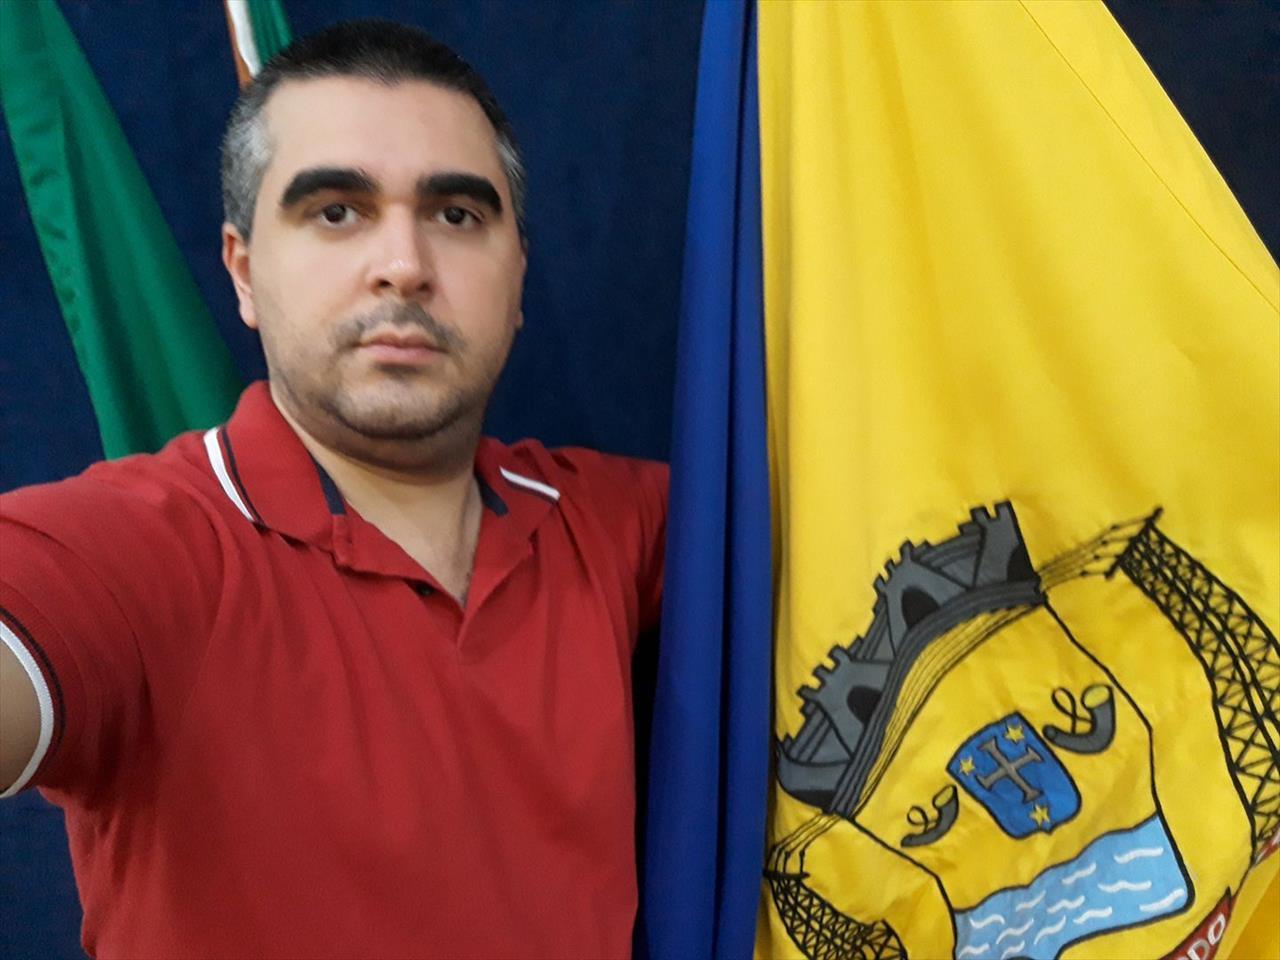 Perseguido por não bajular, jornalista da Câmara detona e desafia vereadores de Ribas